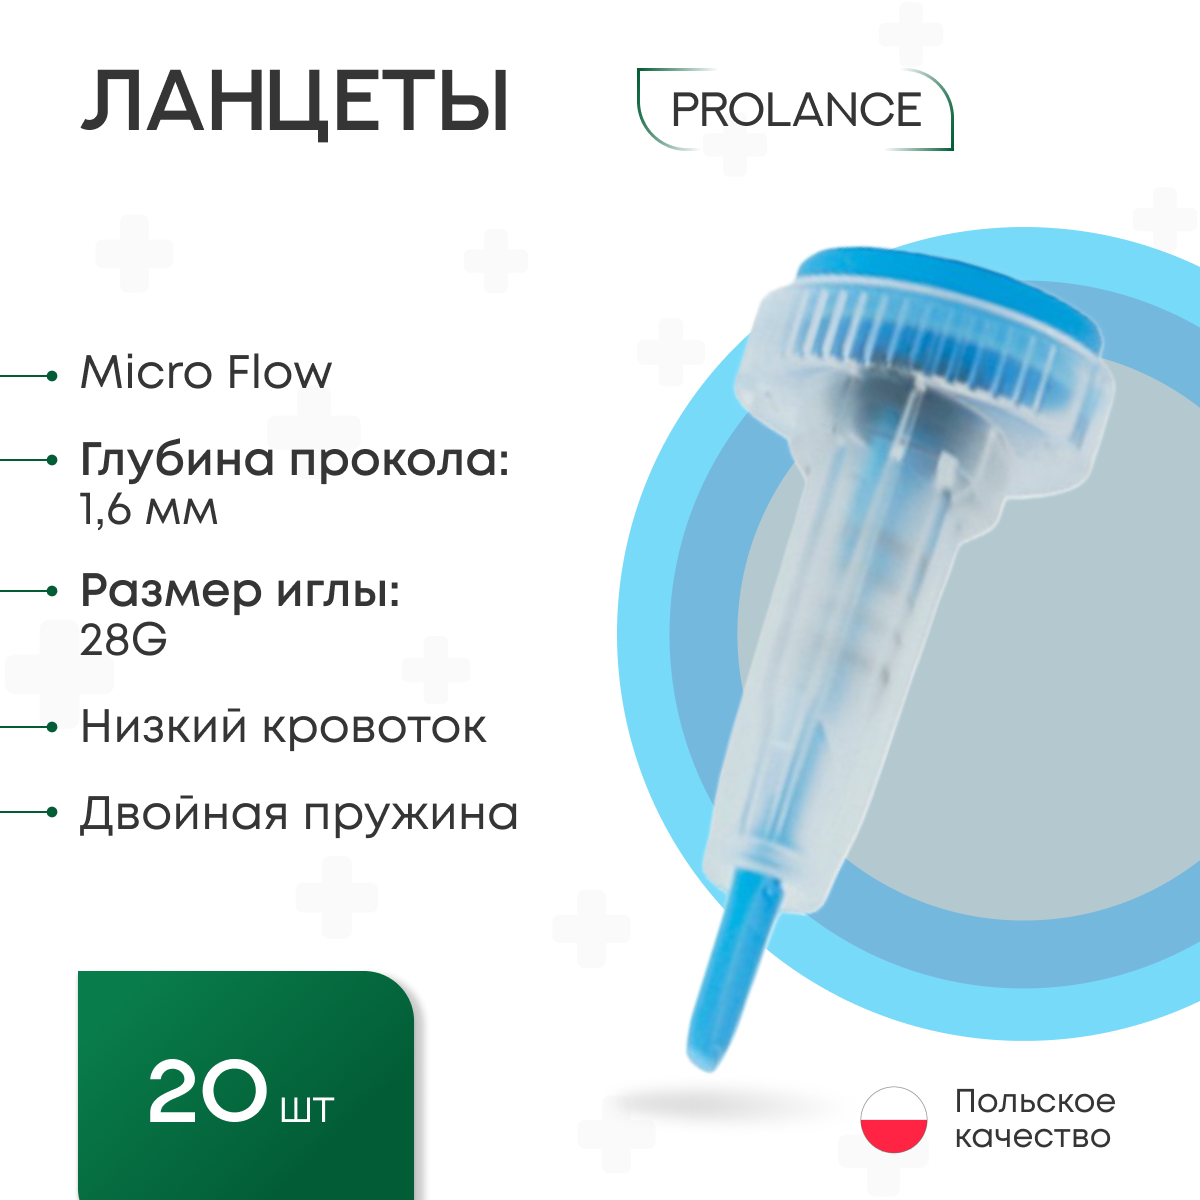 Ланцеты Prolance Micro Flow для капиллярного забора крови 20 шт., глубина прокола 1,6 мм, голубые